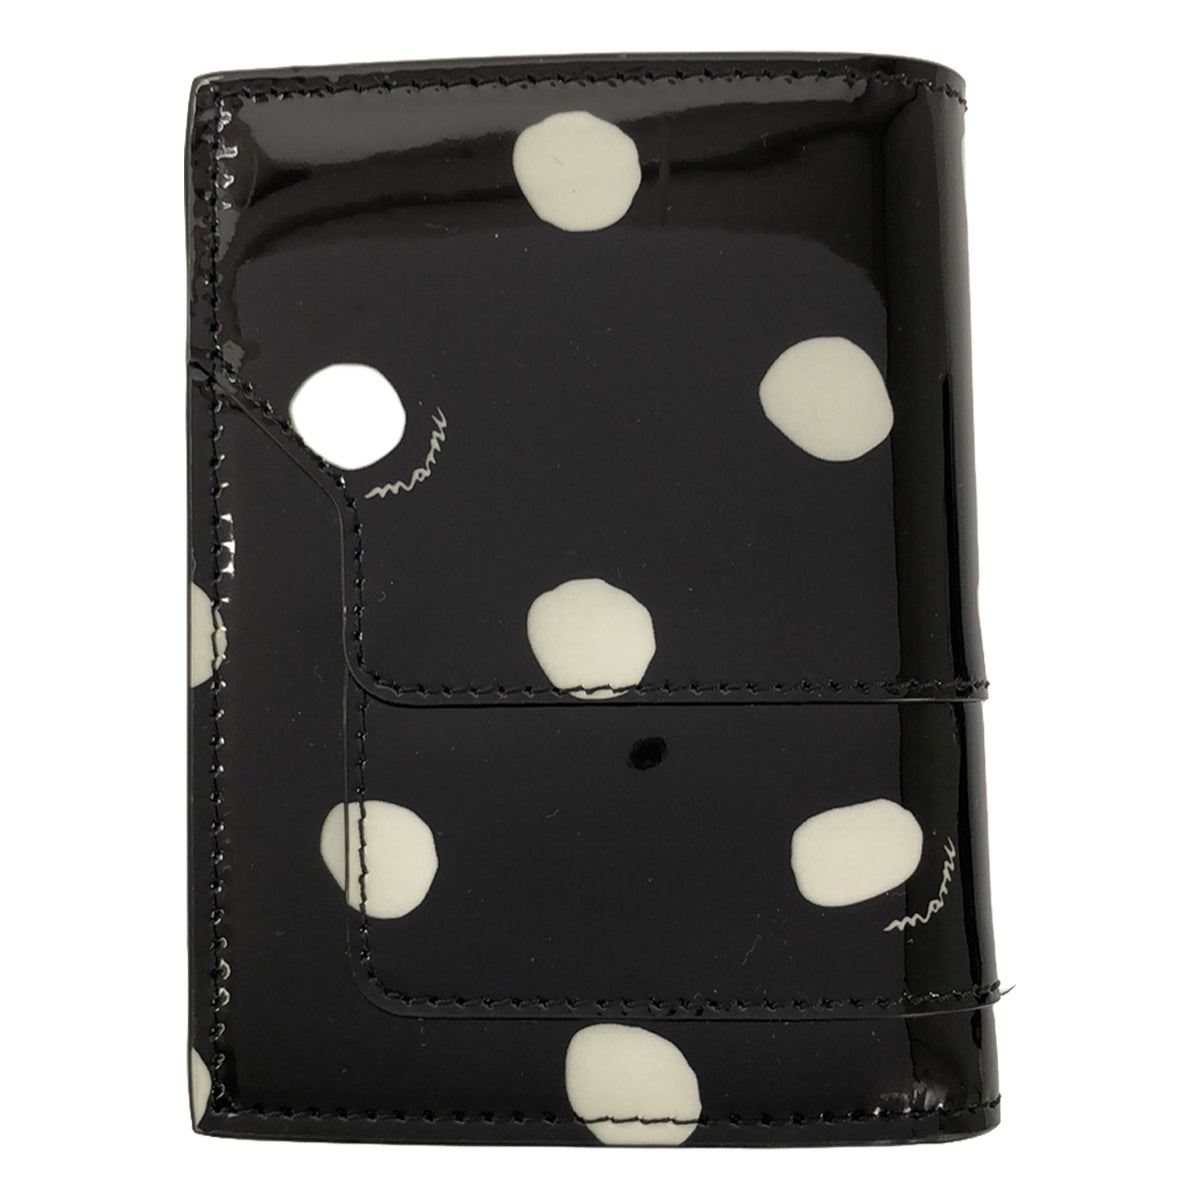 MARNI / マルニ | パテントレザー ドット 水玉 二つ折り財布 |